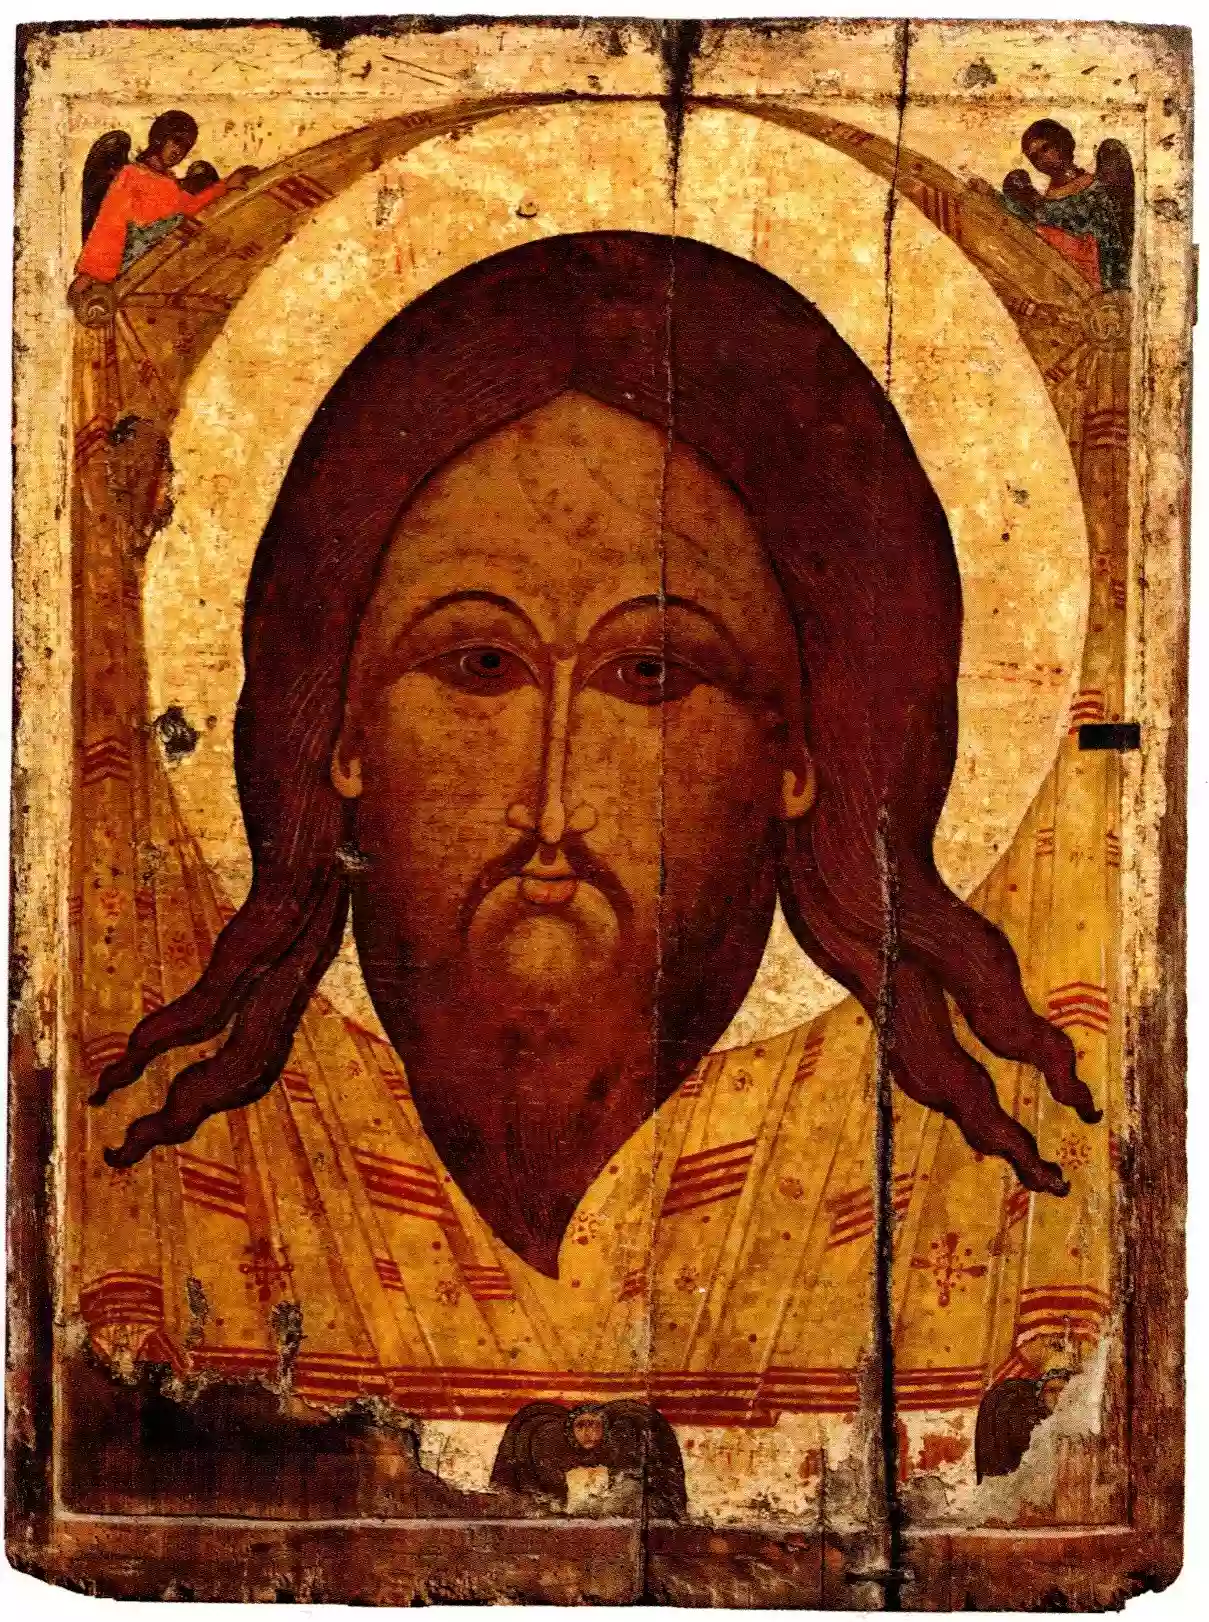 Εικόνα του Ιησού (αχειροποίητος) (1550 μ.Χ.)